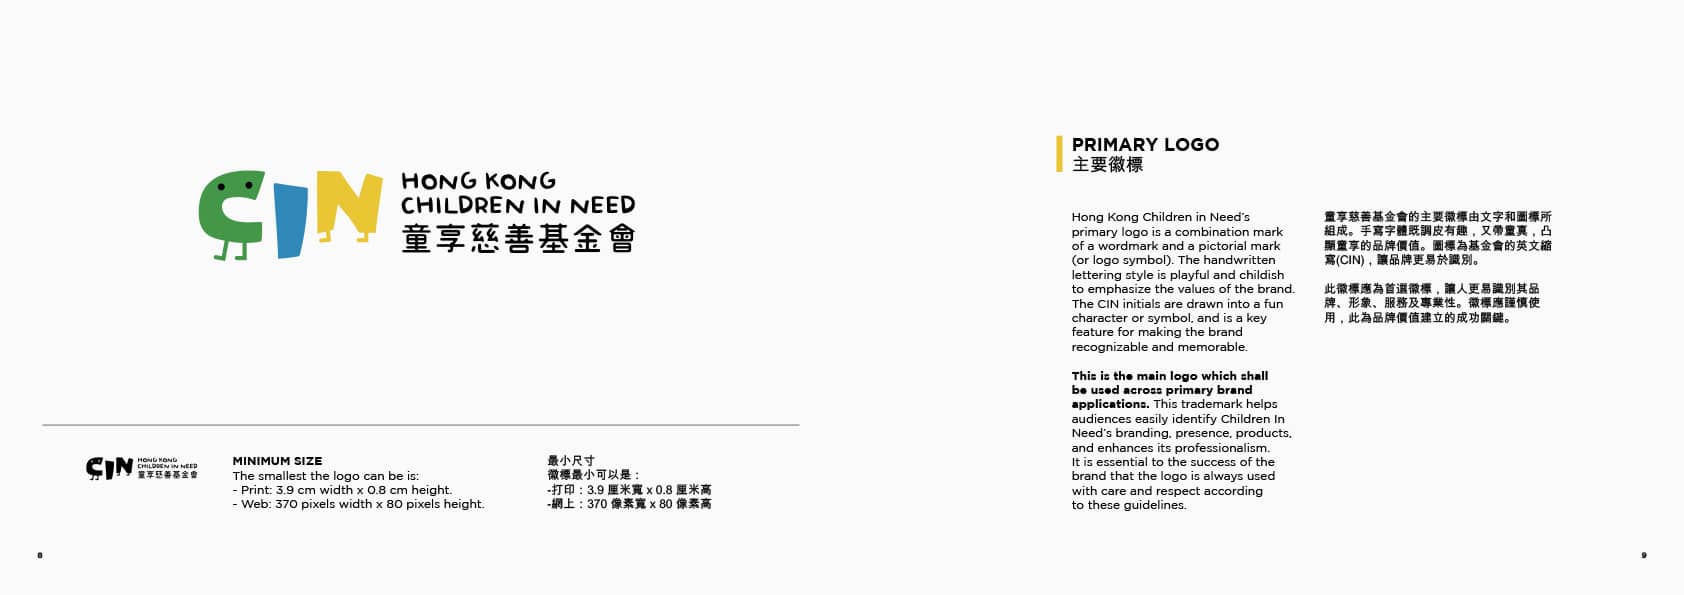 HKCIN-brand-book-300dpi-5